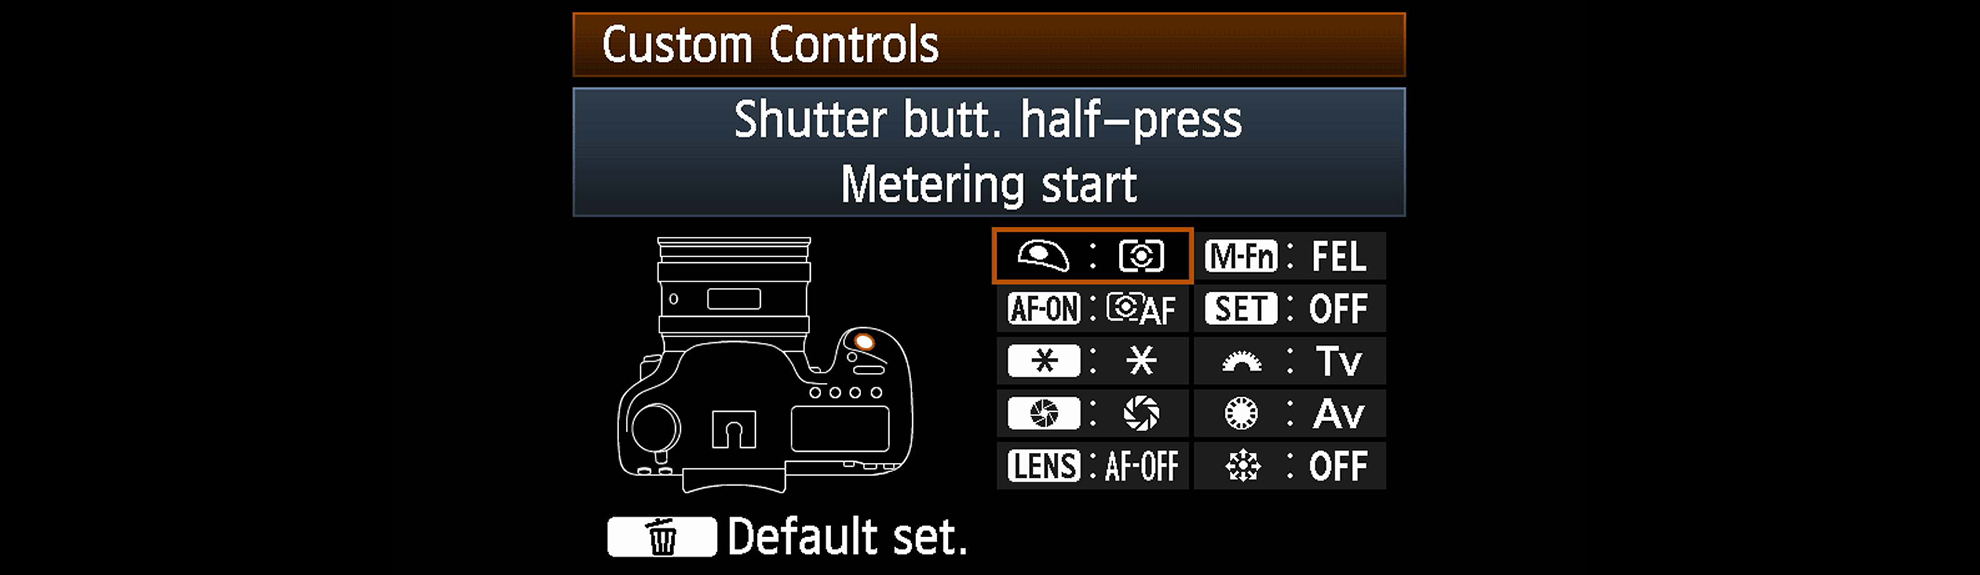 Custom controls panel camera menu